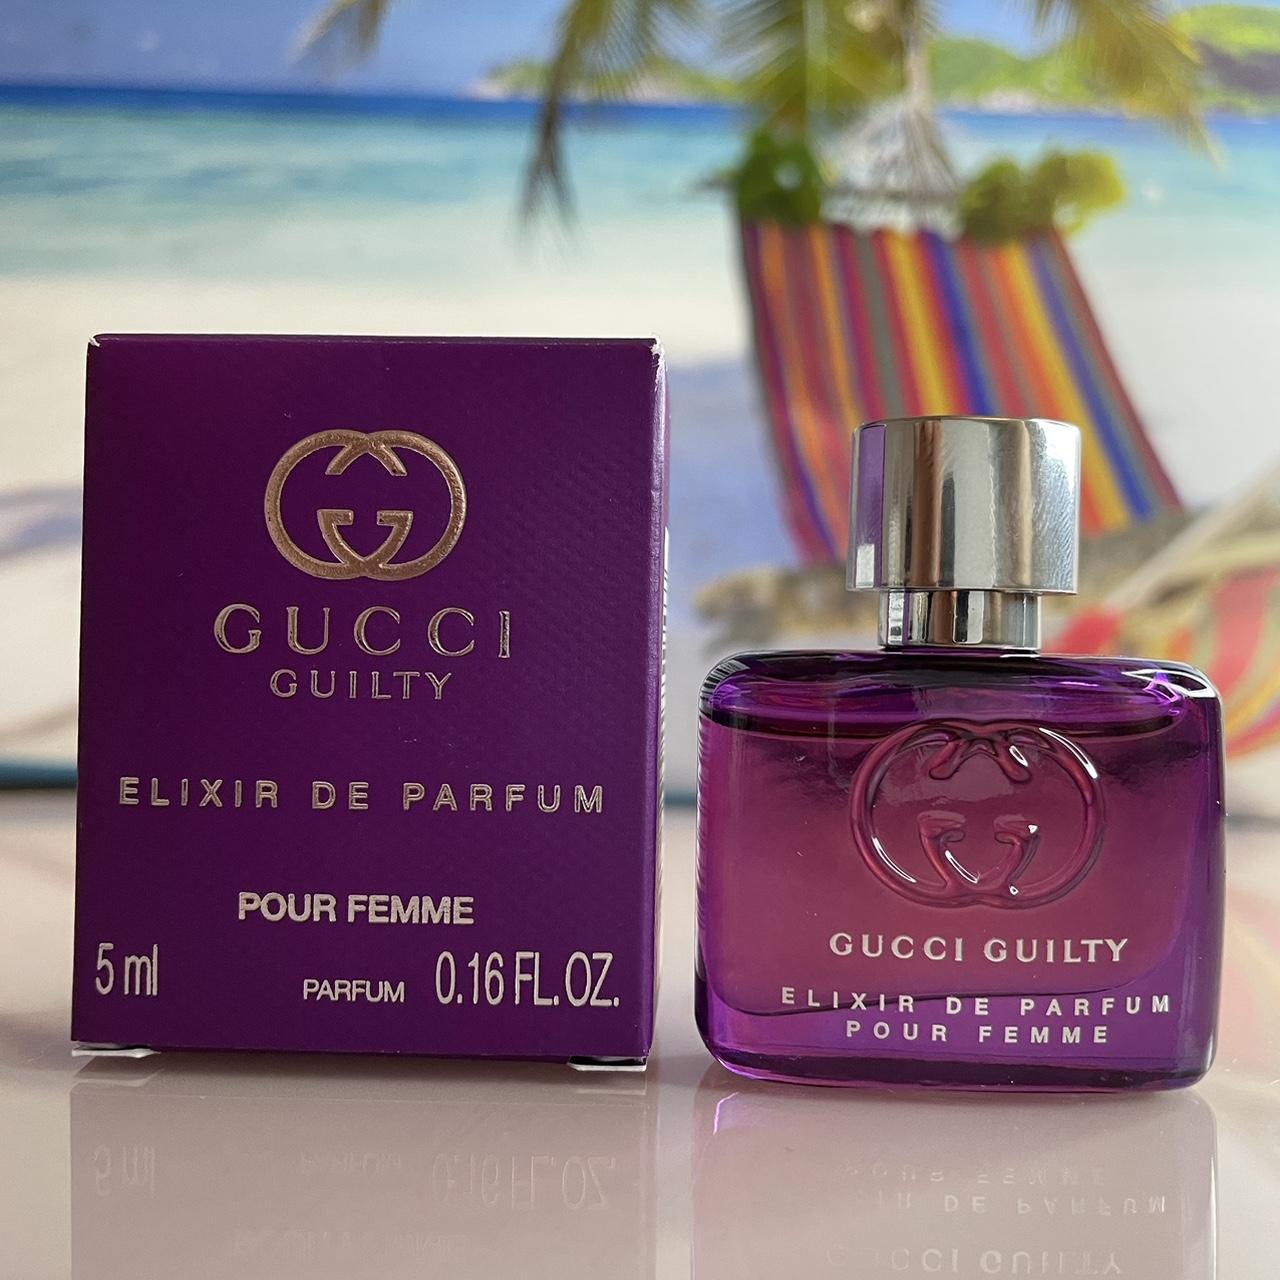 Gucci Guilty Elixir De Parfum Pour Femme Parfum 5 ml... - Depop